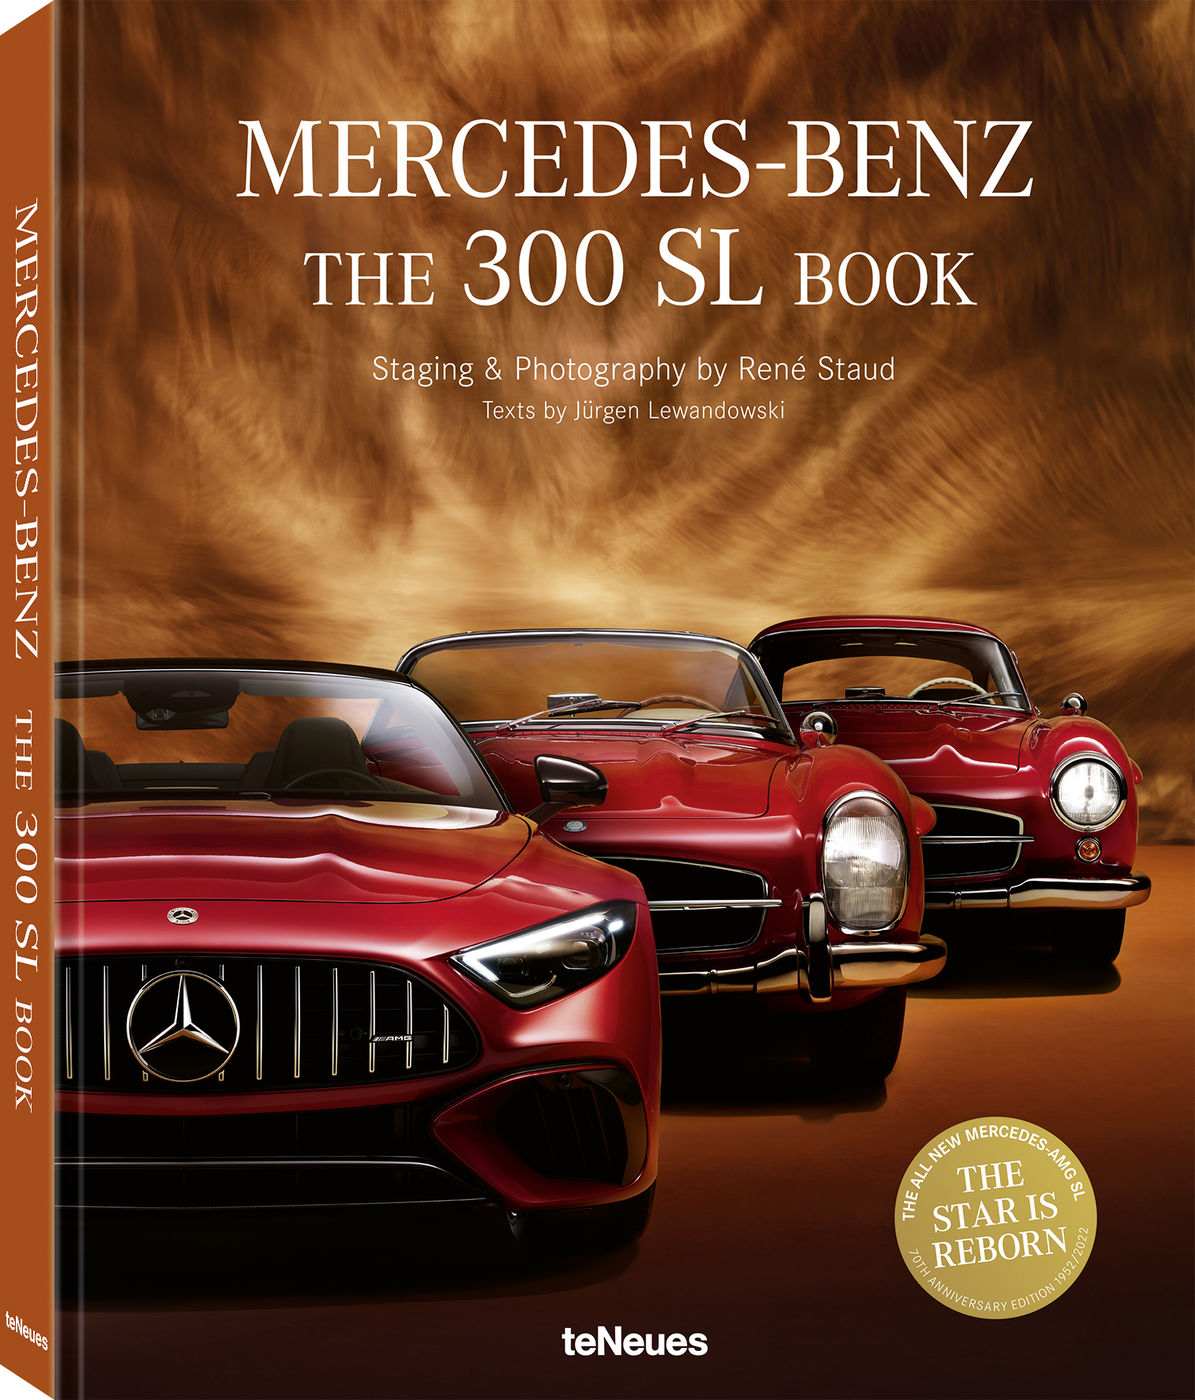 Mercedes-Benz
Mercedes-Benz
Mercedes-Benz